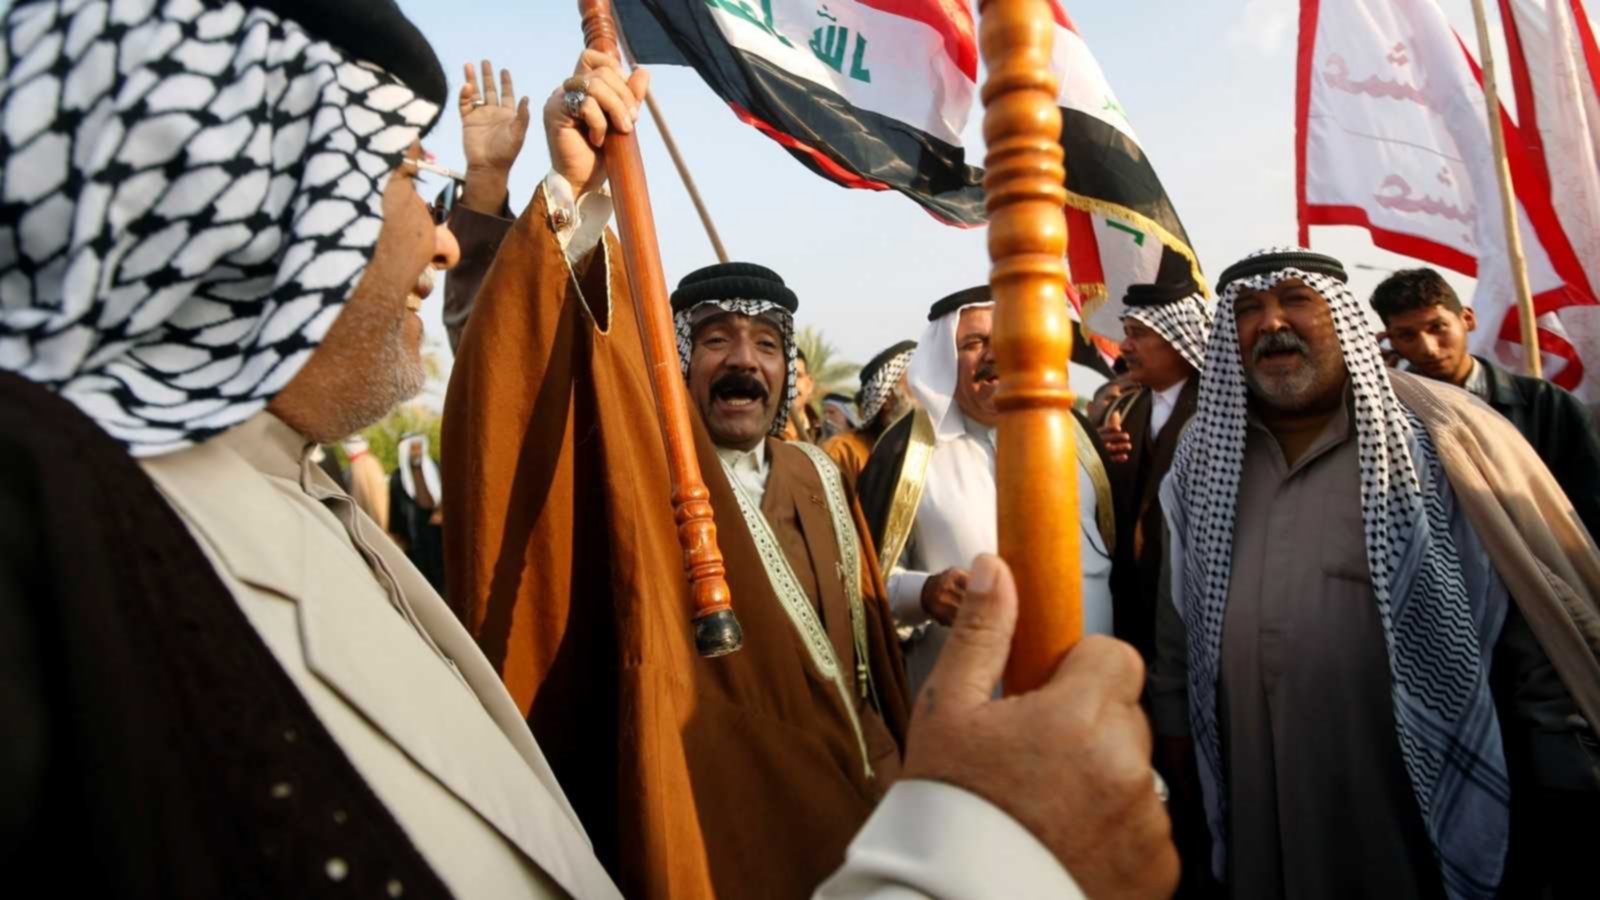 القبائل العربية في العراق.. "الجحيش" وتمتد أصولها لمعد بن كرب الزبيدي